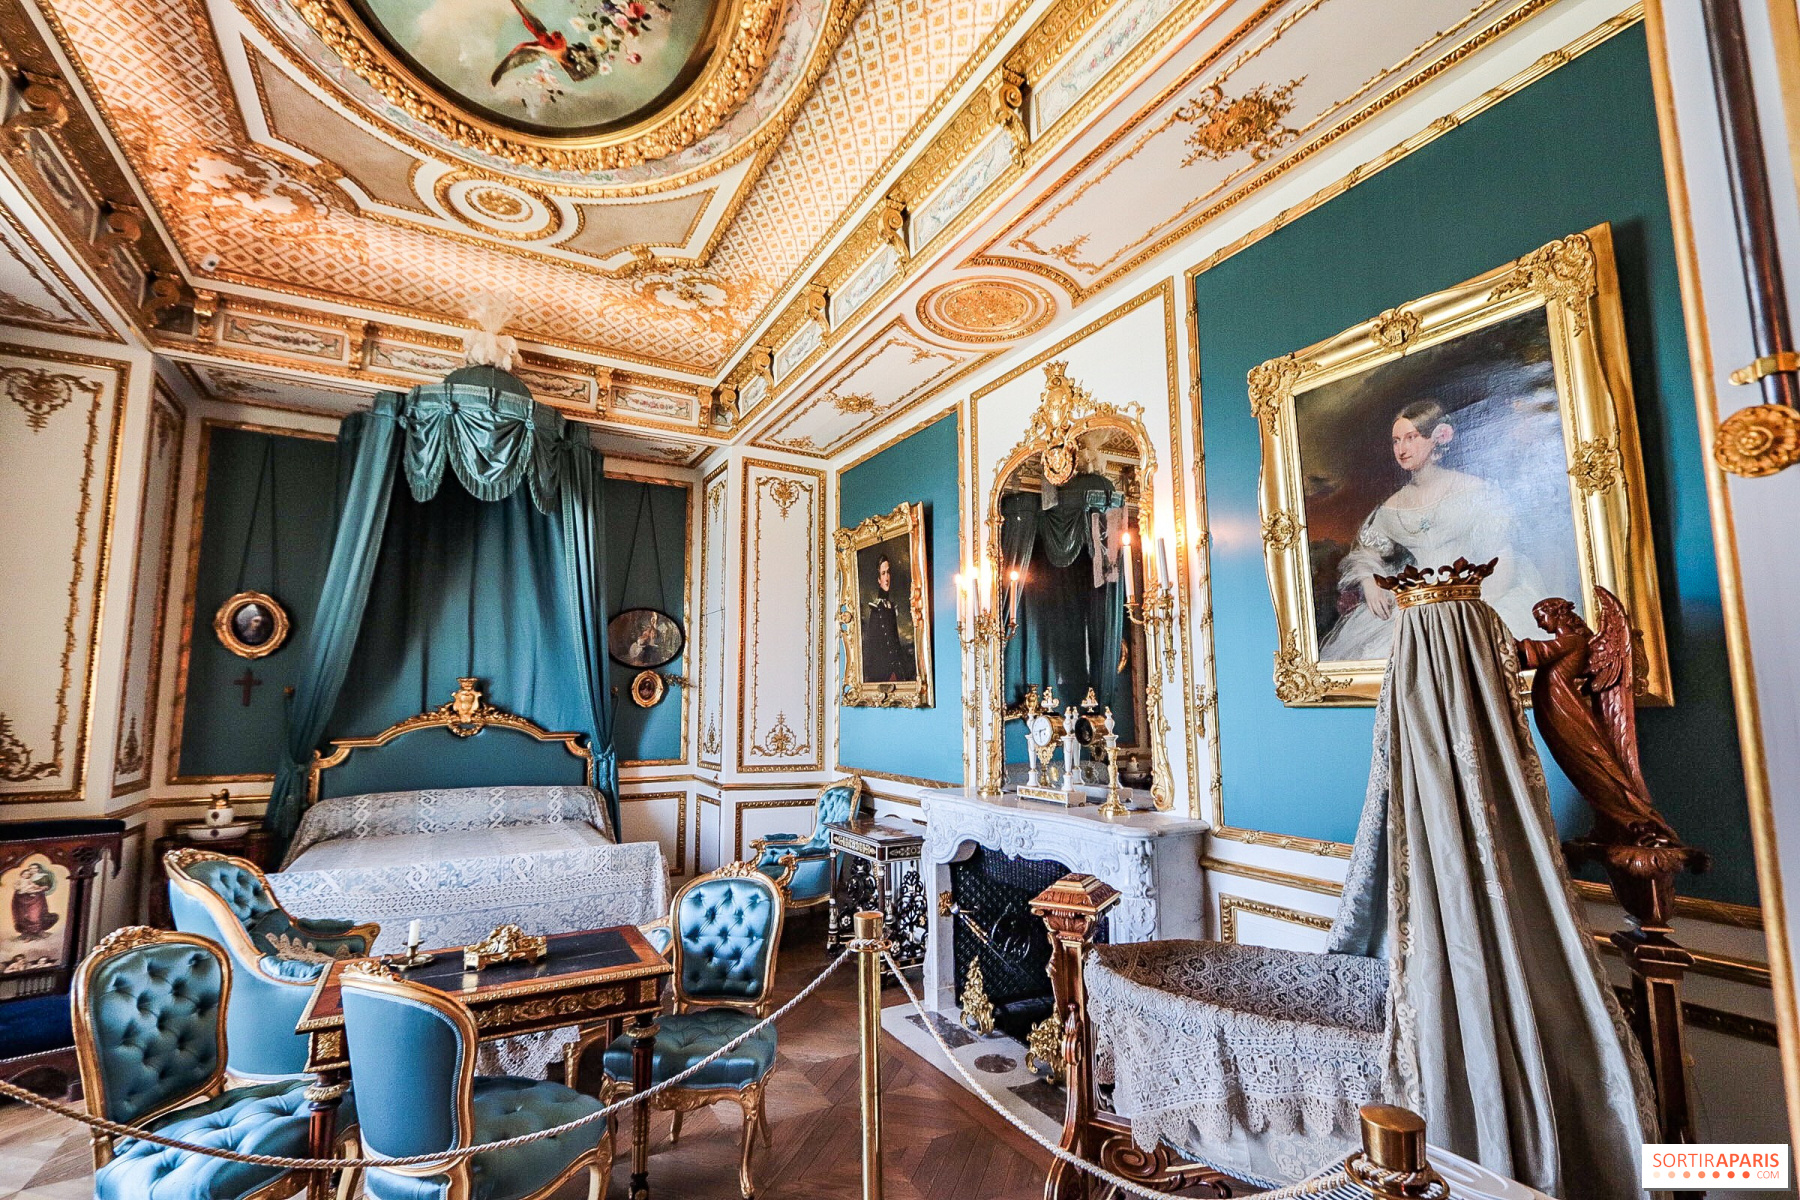 Domaine de Chantilly: Paris' alternative to Versailles